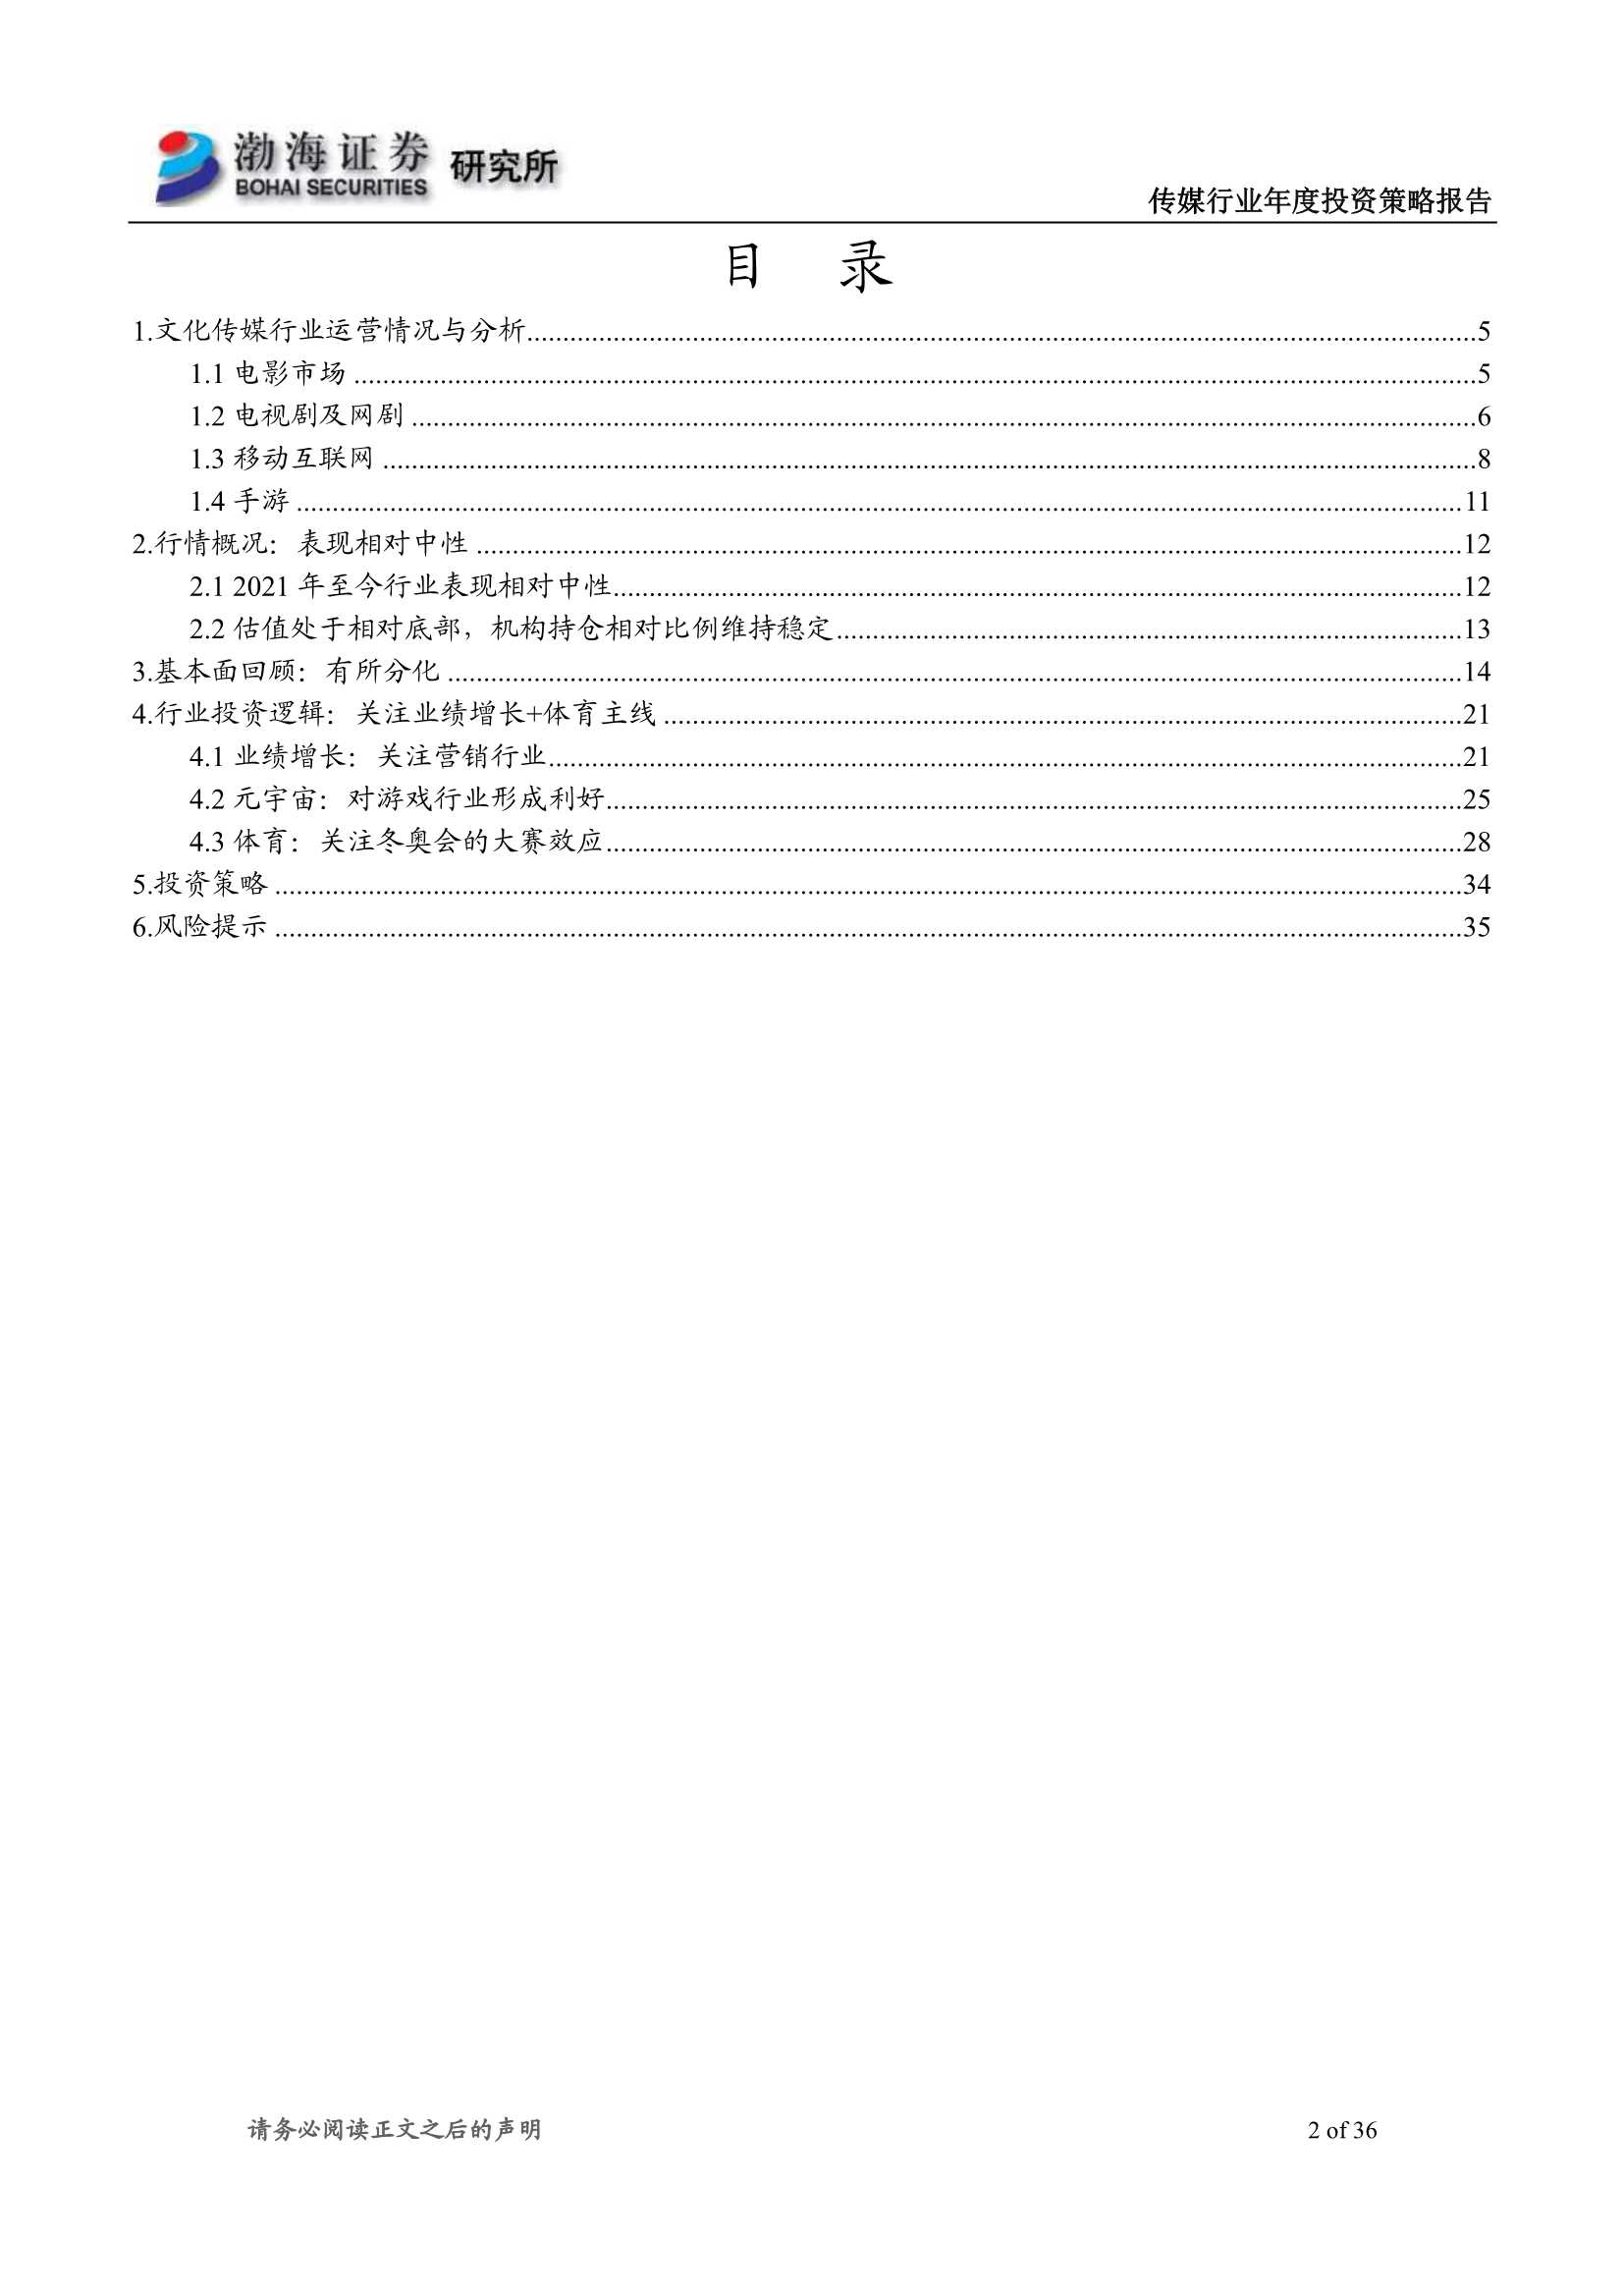 渤海证券-传媒行业2022年投资策略报告：业绩复苏，关注估值修复行情-20211208-36页